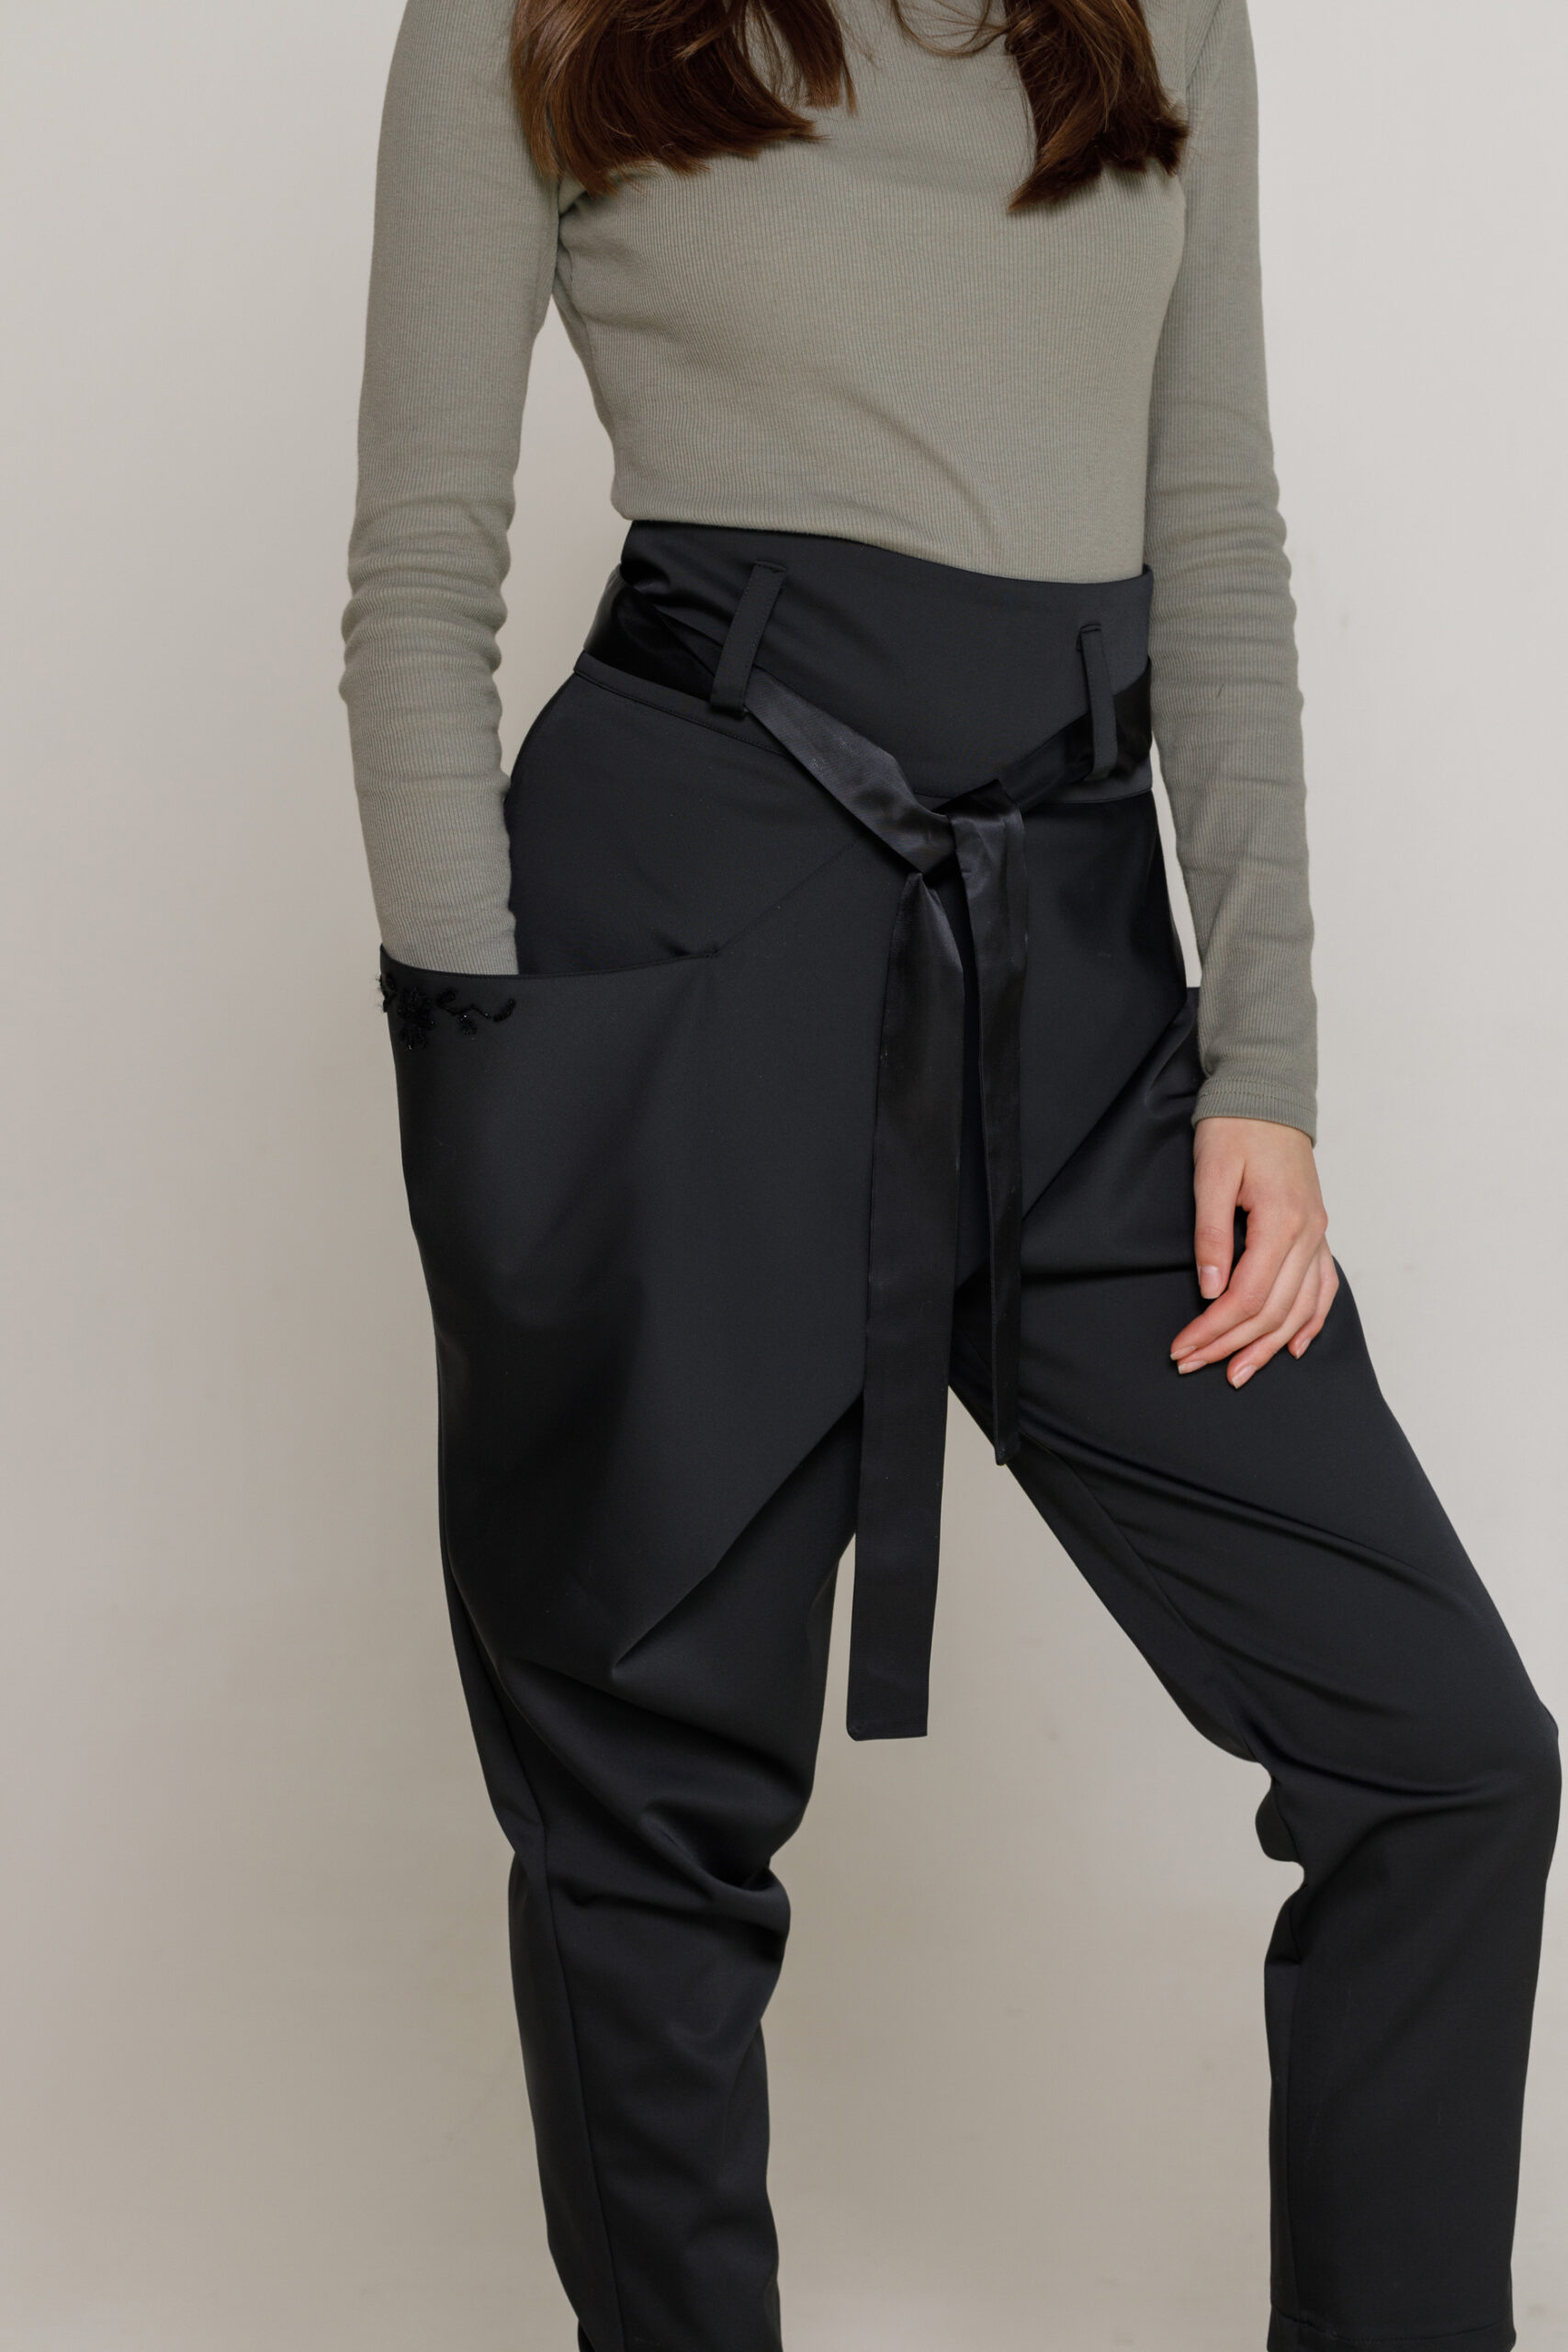 Pantalon ADAN casual din tercot negru. Materiale naturale, design unicat, cu broderie si aplicatii handmade